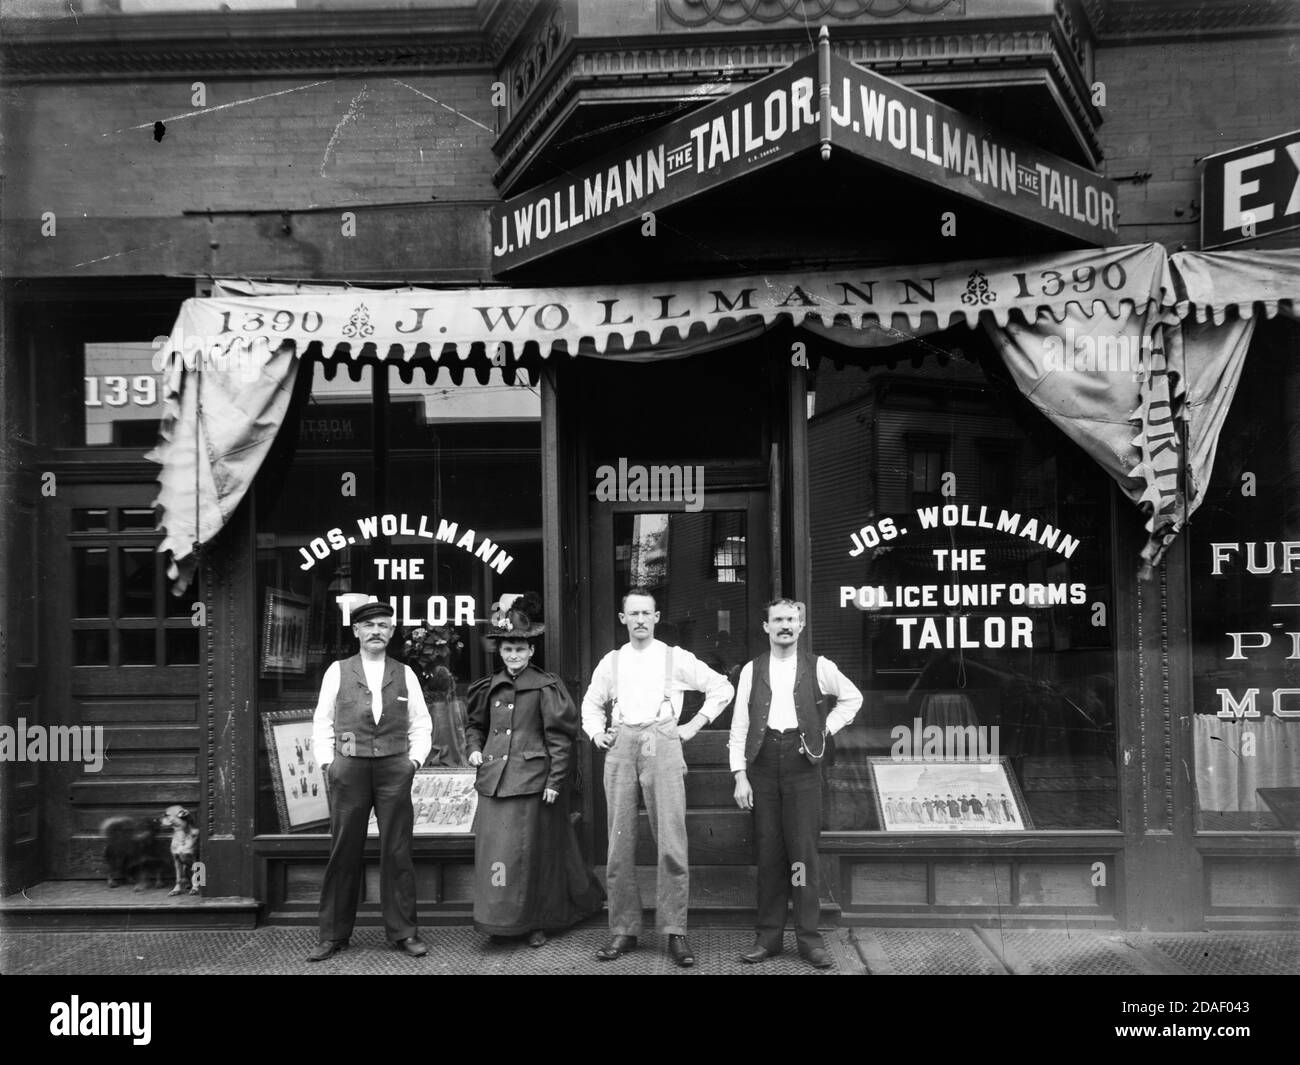 Nicht identifizierte Personen, die außerhalb von Joseph Wollmann stehen, einem Schneidergeschäft in der North Clark Street 1390, Chicago, Illinois, um 1895. Stockfoto